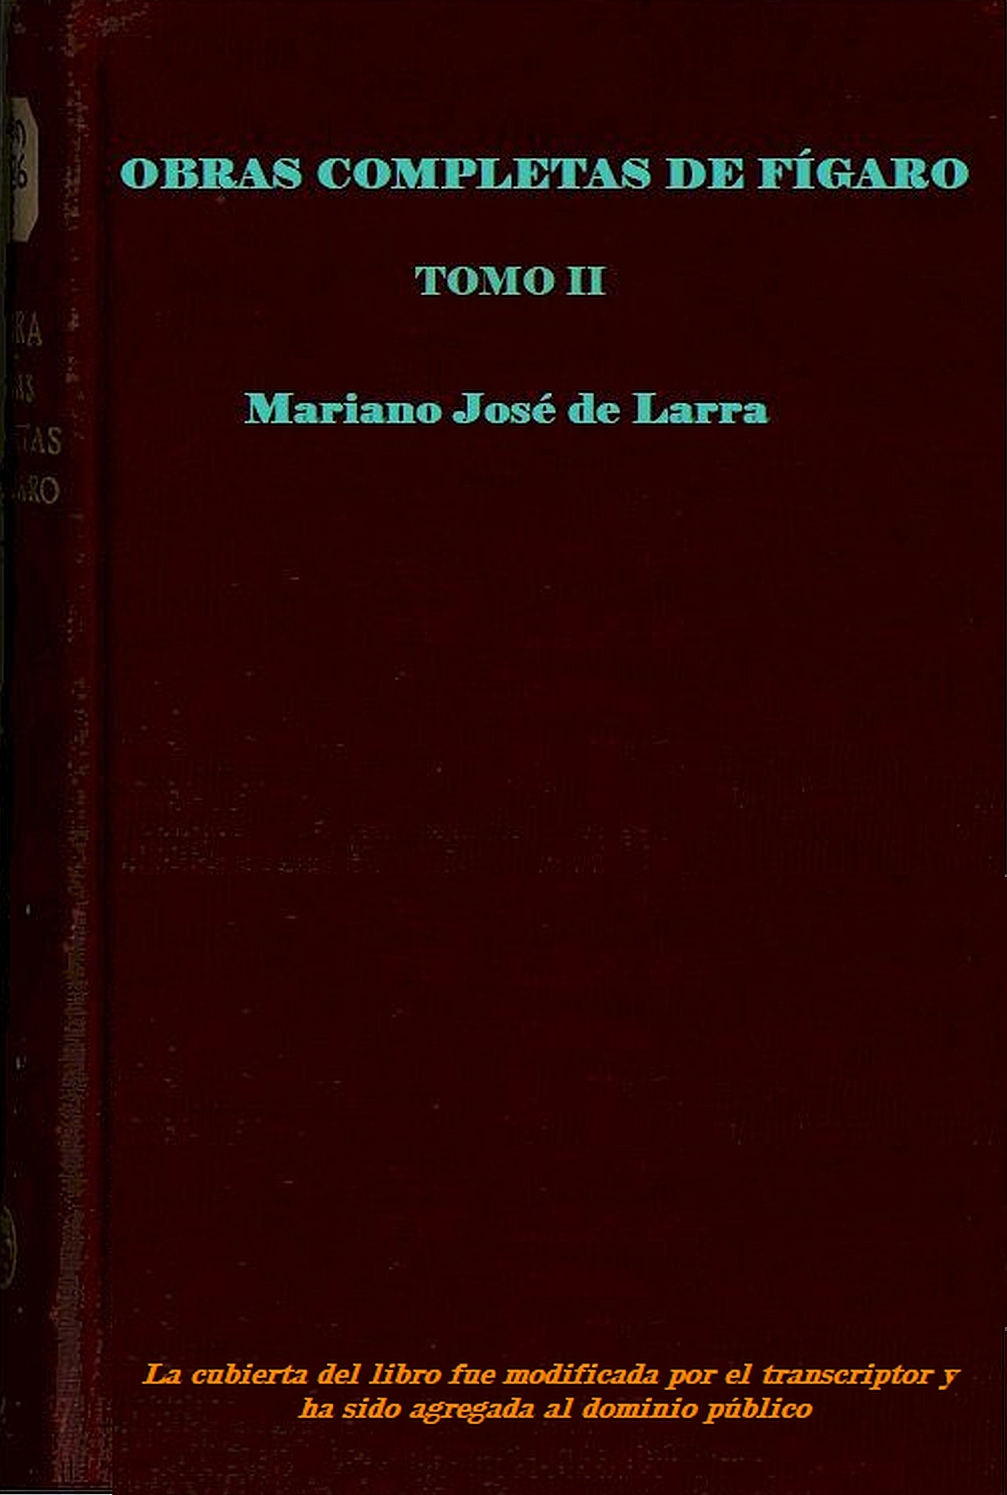 Obras Completas de Fígaro - Tomo 2, by Mariano José de Larra—A Project  Gutenberg eBook